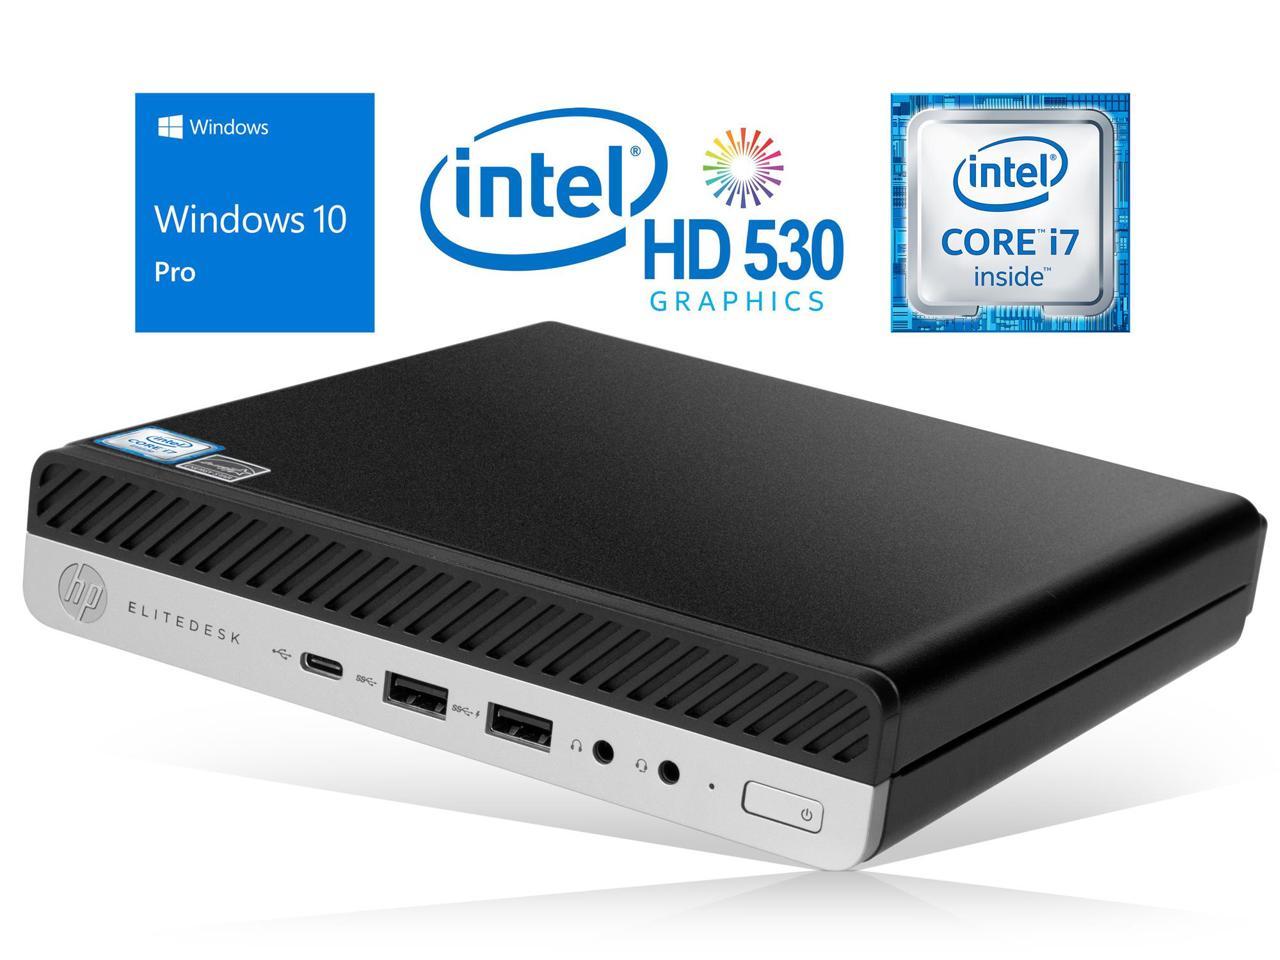 HP EliteDesk 800 G3 Mini PC, Intel Core i7-6700 Upto 4.0GHz, 32GB RAM, 512GB NVMe SSD + 1TB HDD, DisplayPort, Wi-Fi, Bluetooth, Windows 10 Pro